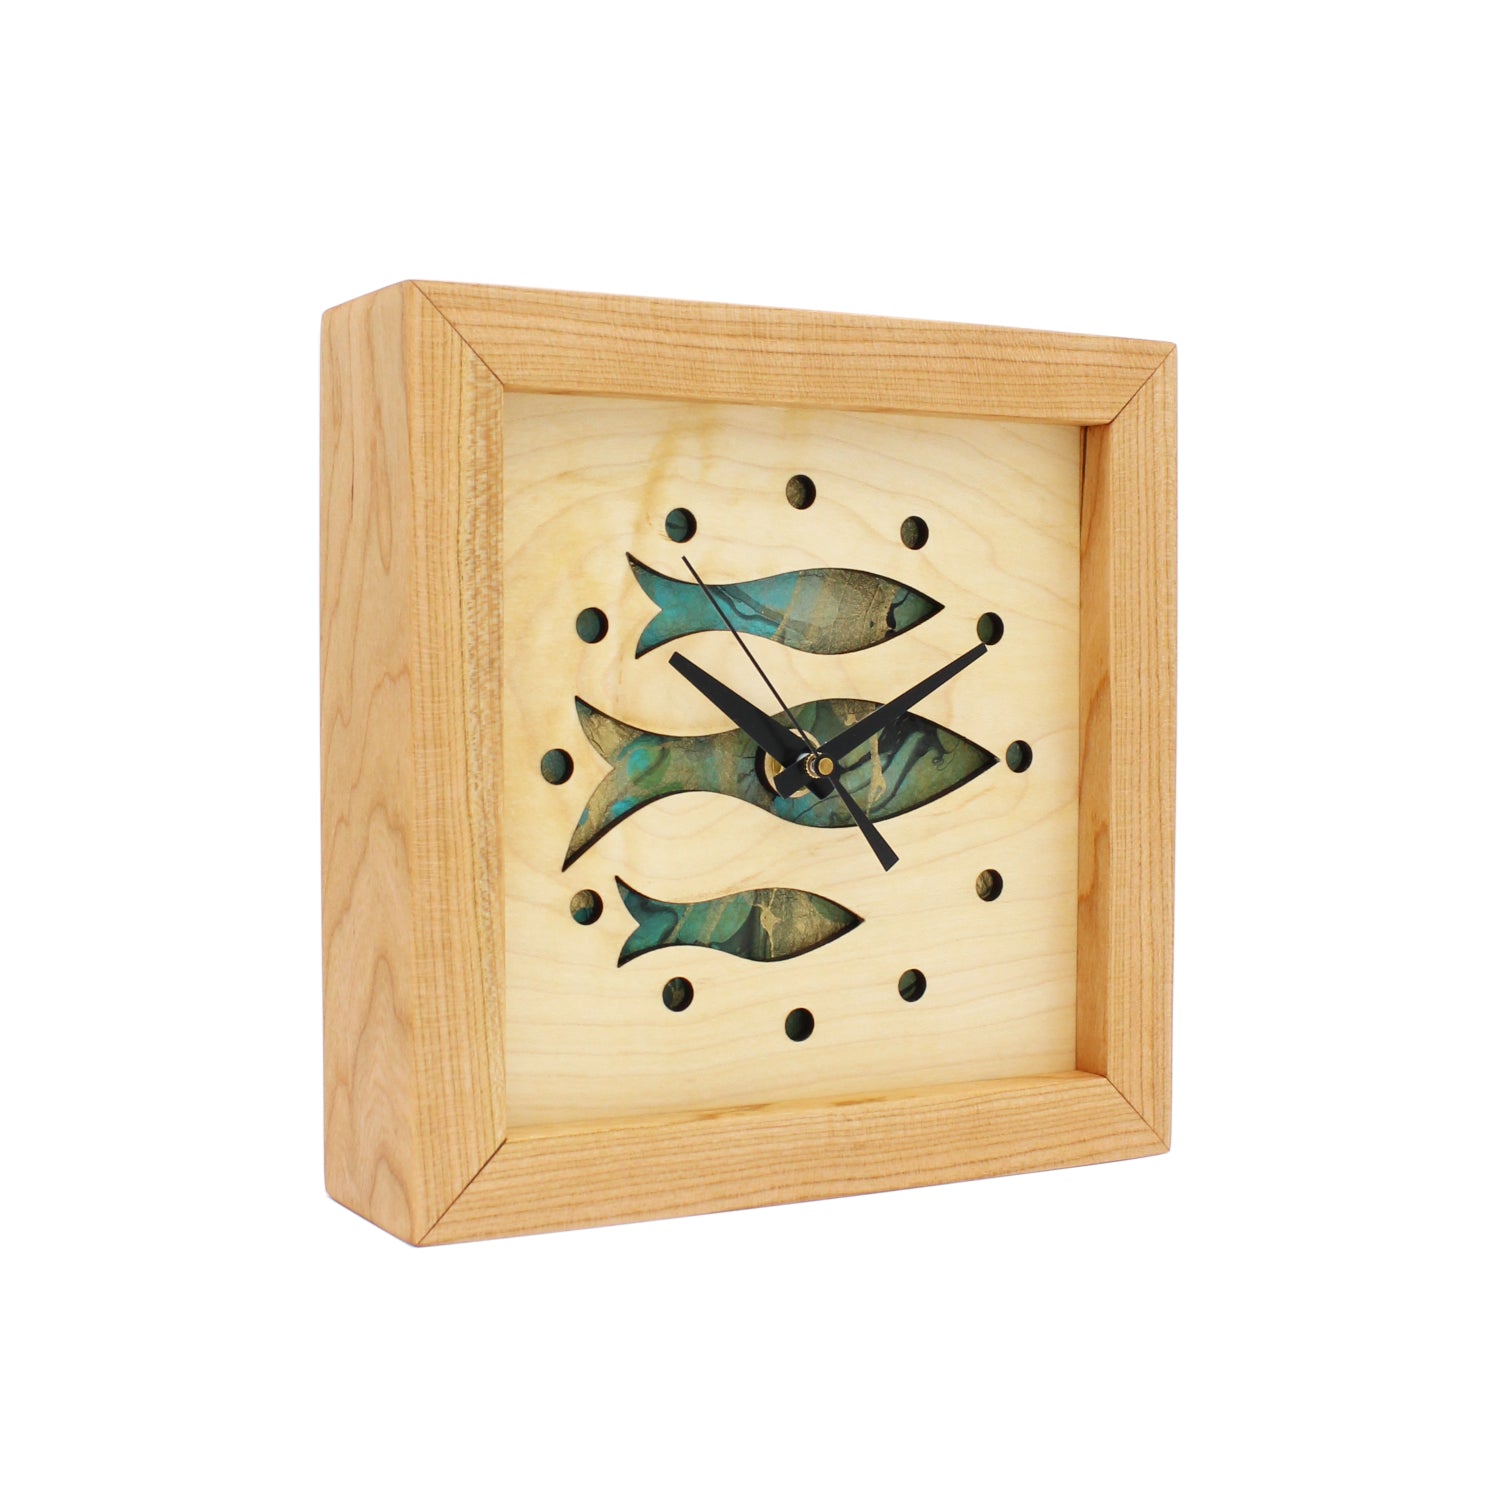 Fish at School - Aqua, Handcrafted Wooden Box Clock